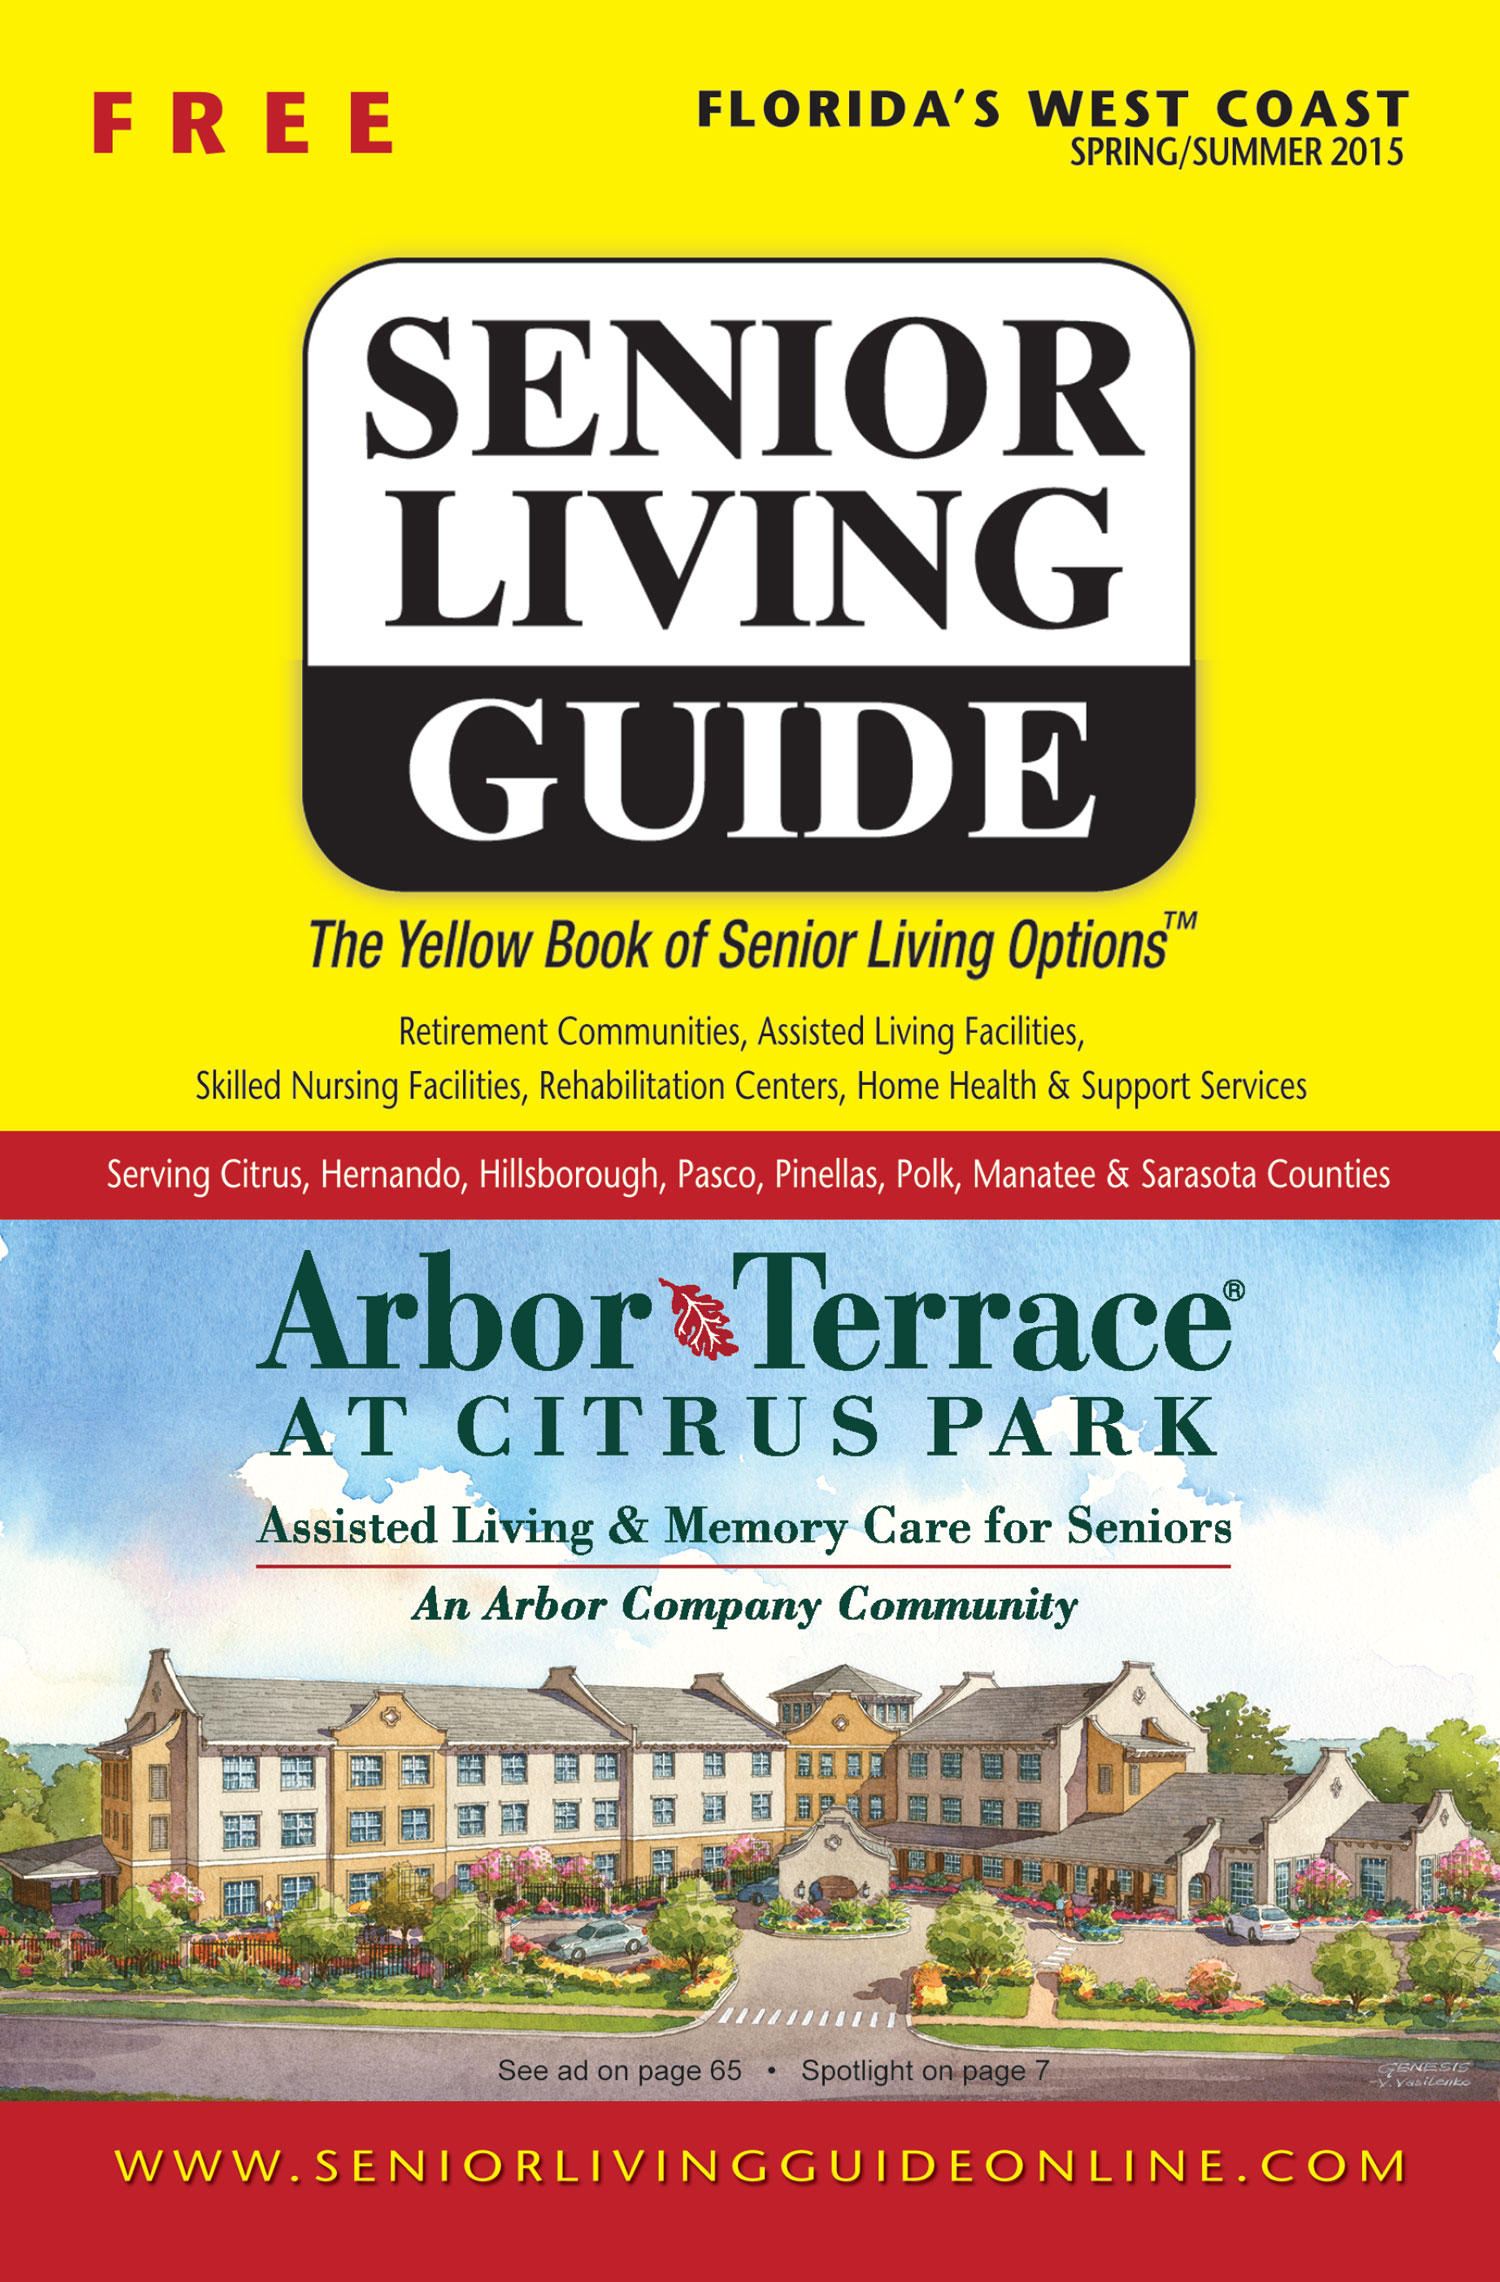 Senior Living Guide - Spring/Summer 2015 issue